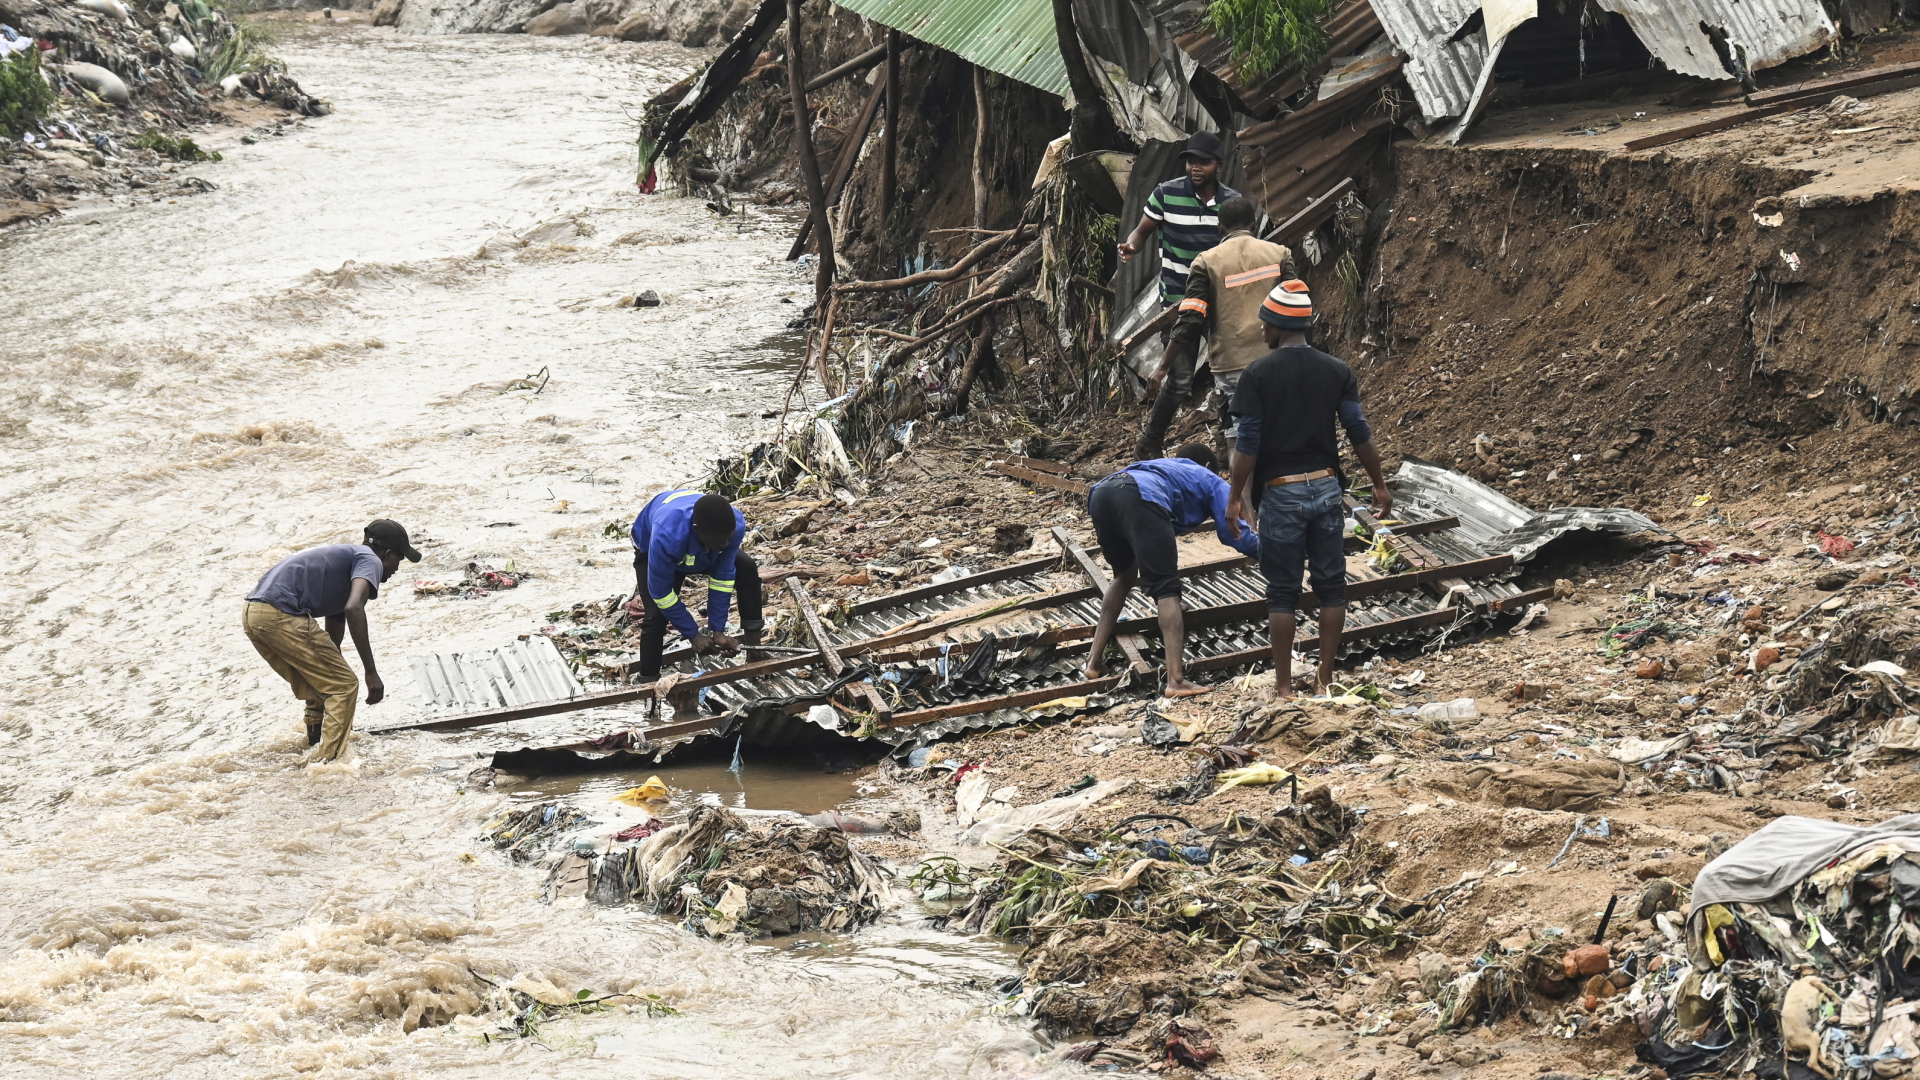 Männer bergen in Malawi Teile ihres zerstörten Hauses nach schweren Regenfällen, die der Zyklon "Freddy" verursacht hat. | dpa